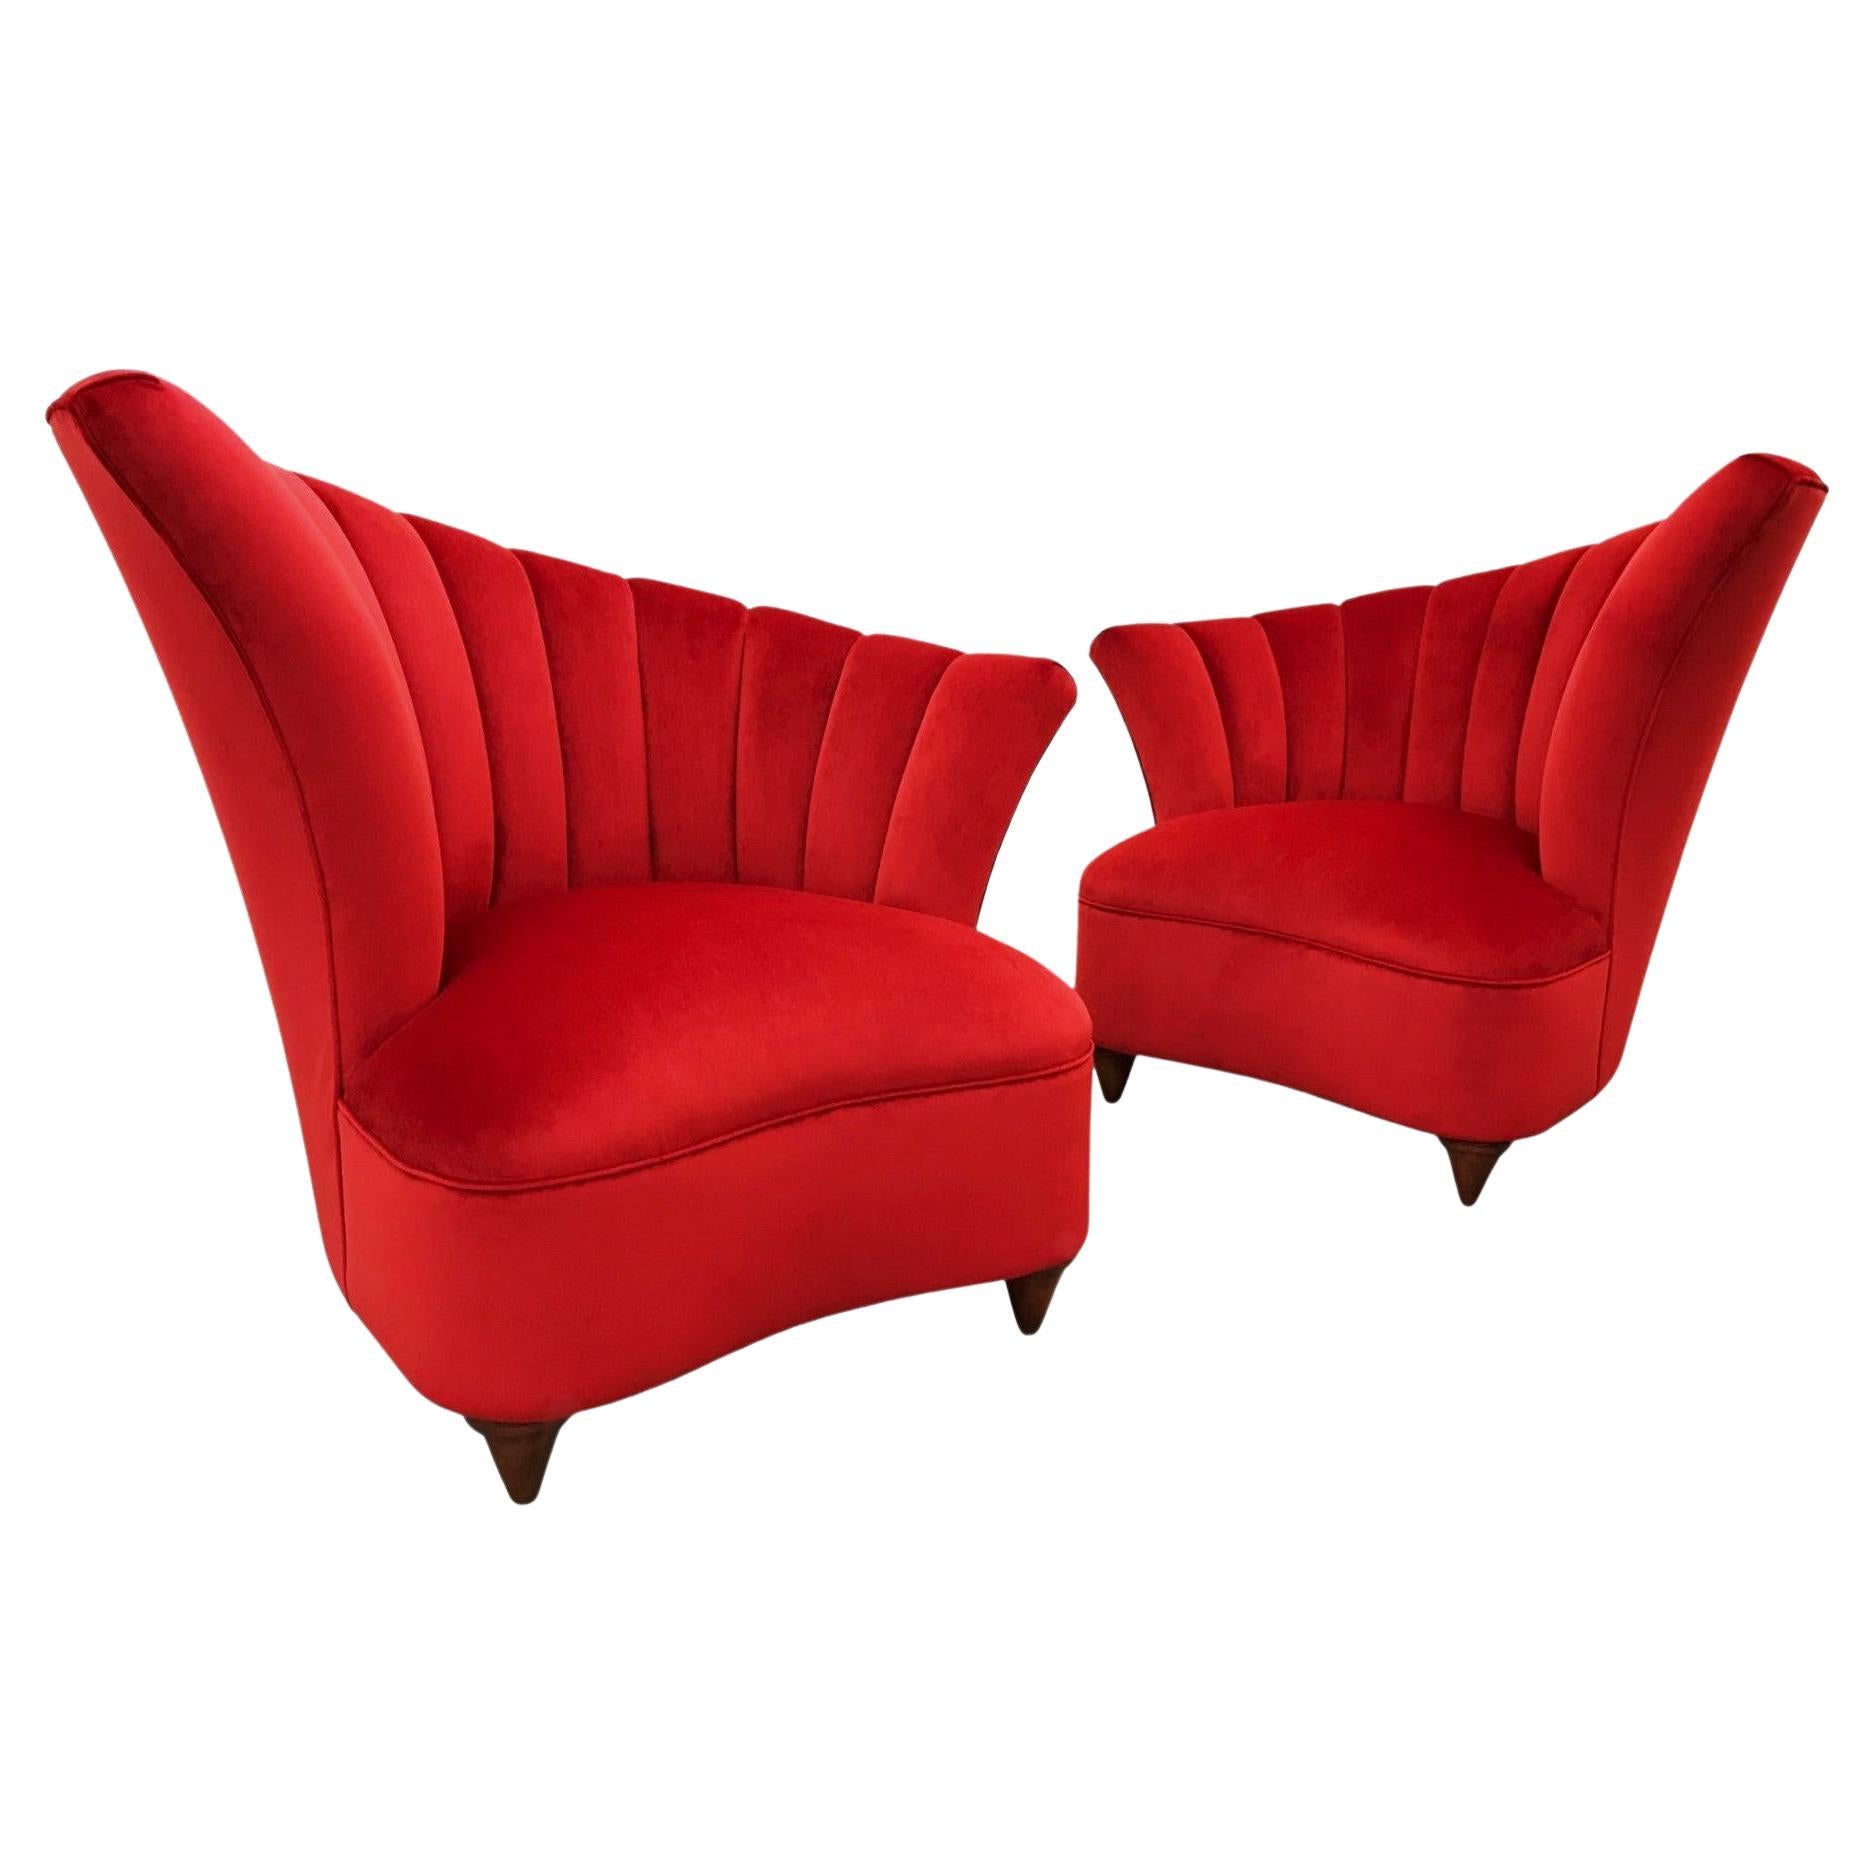 Hollywood Regency Scalloped Asymmetrical Red Velvet Chairs For Sale